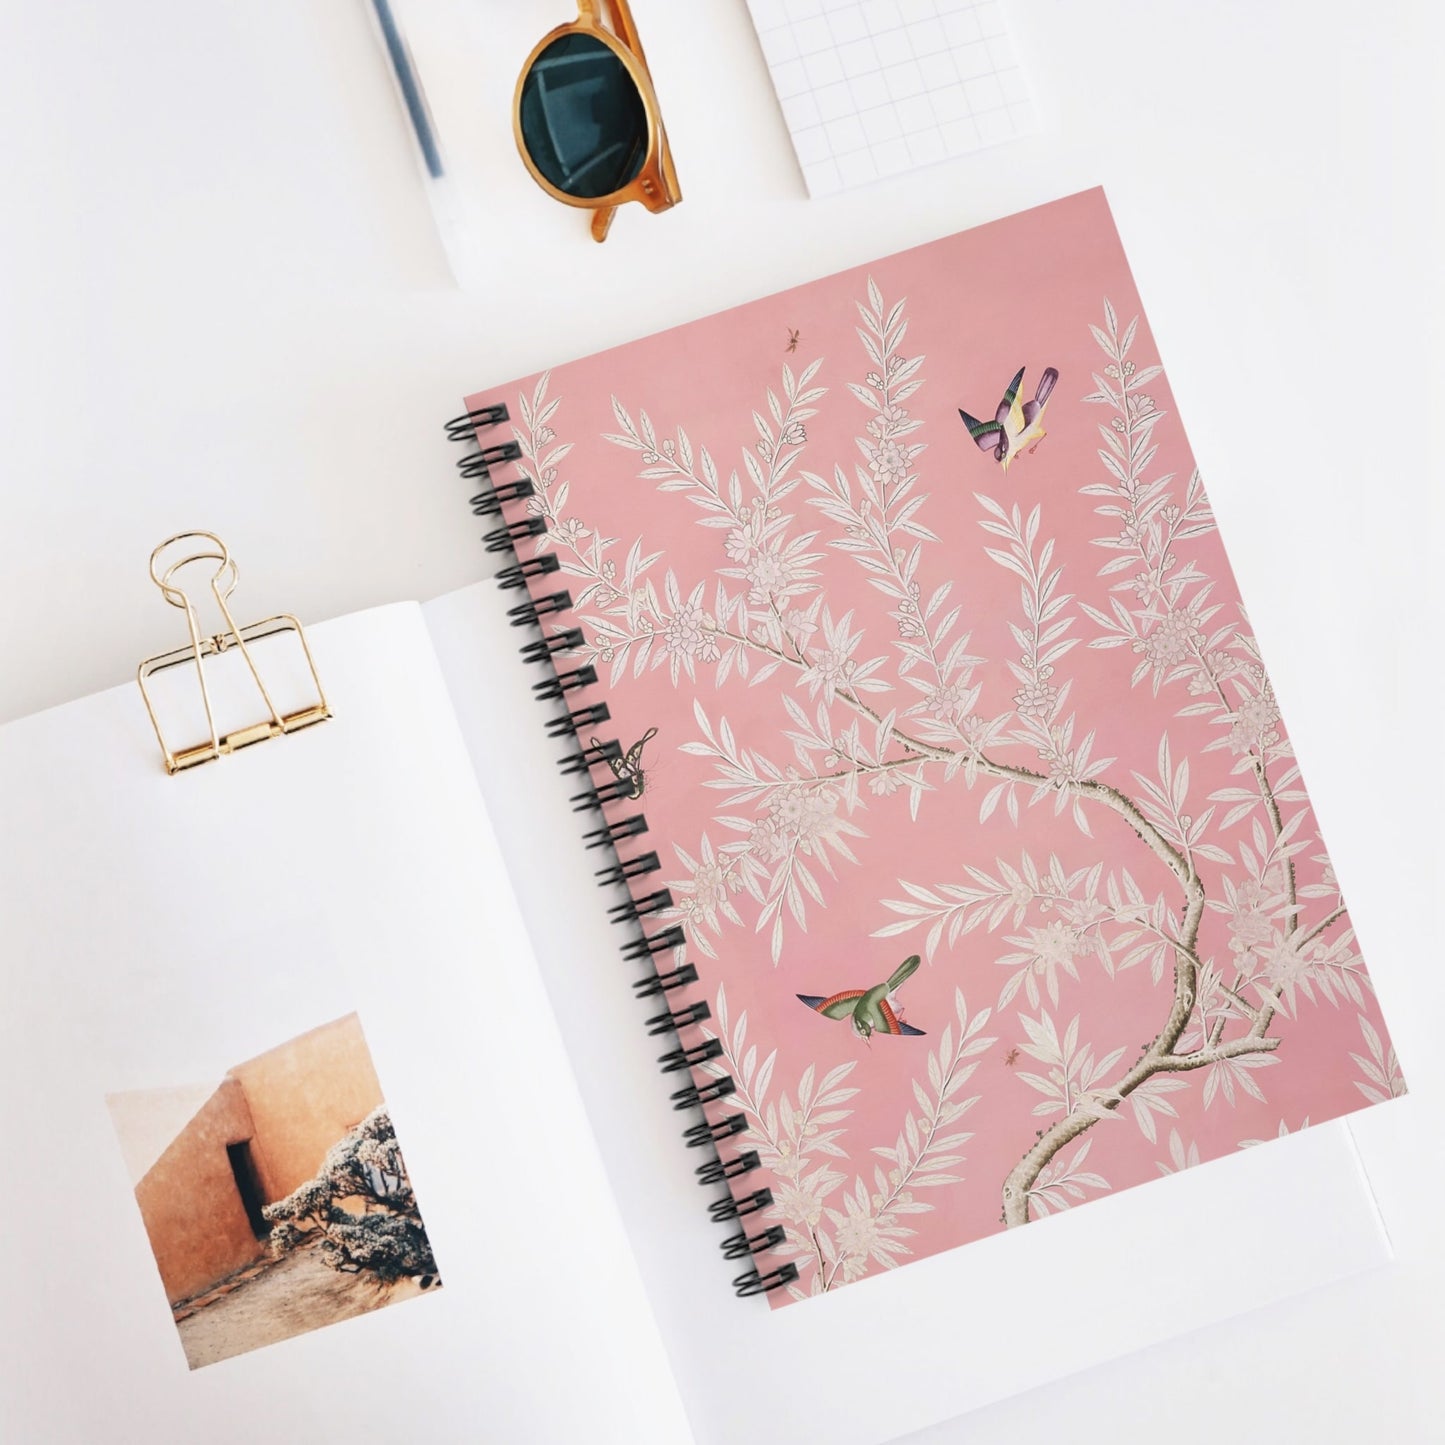 Pink Floral Spiral Notebook Displayed on Desk